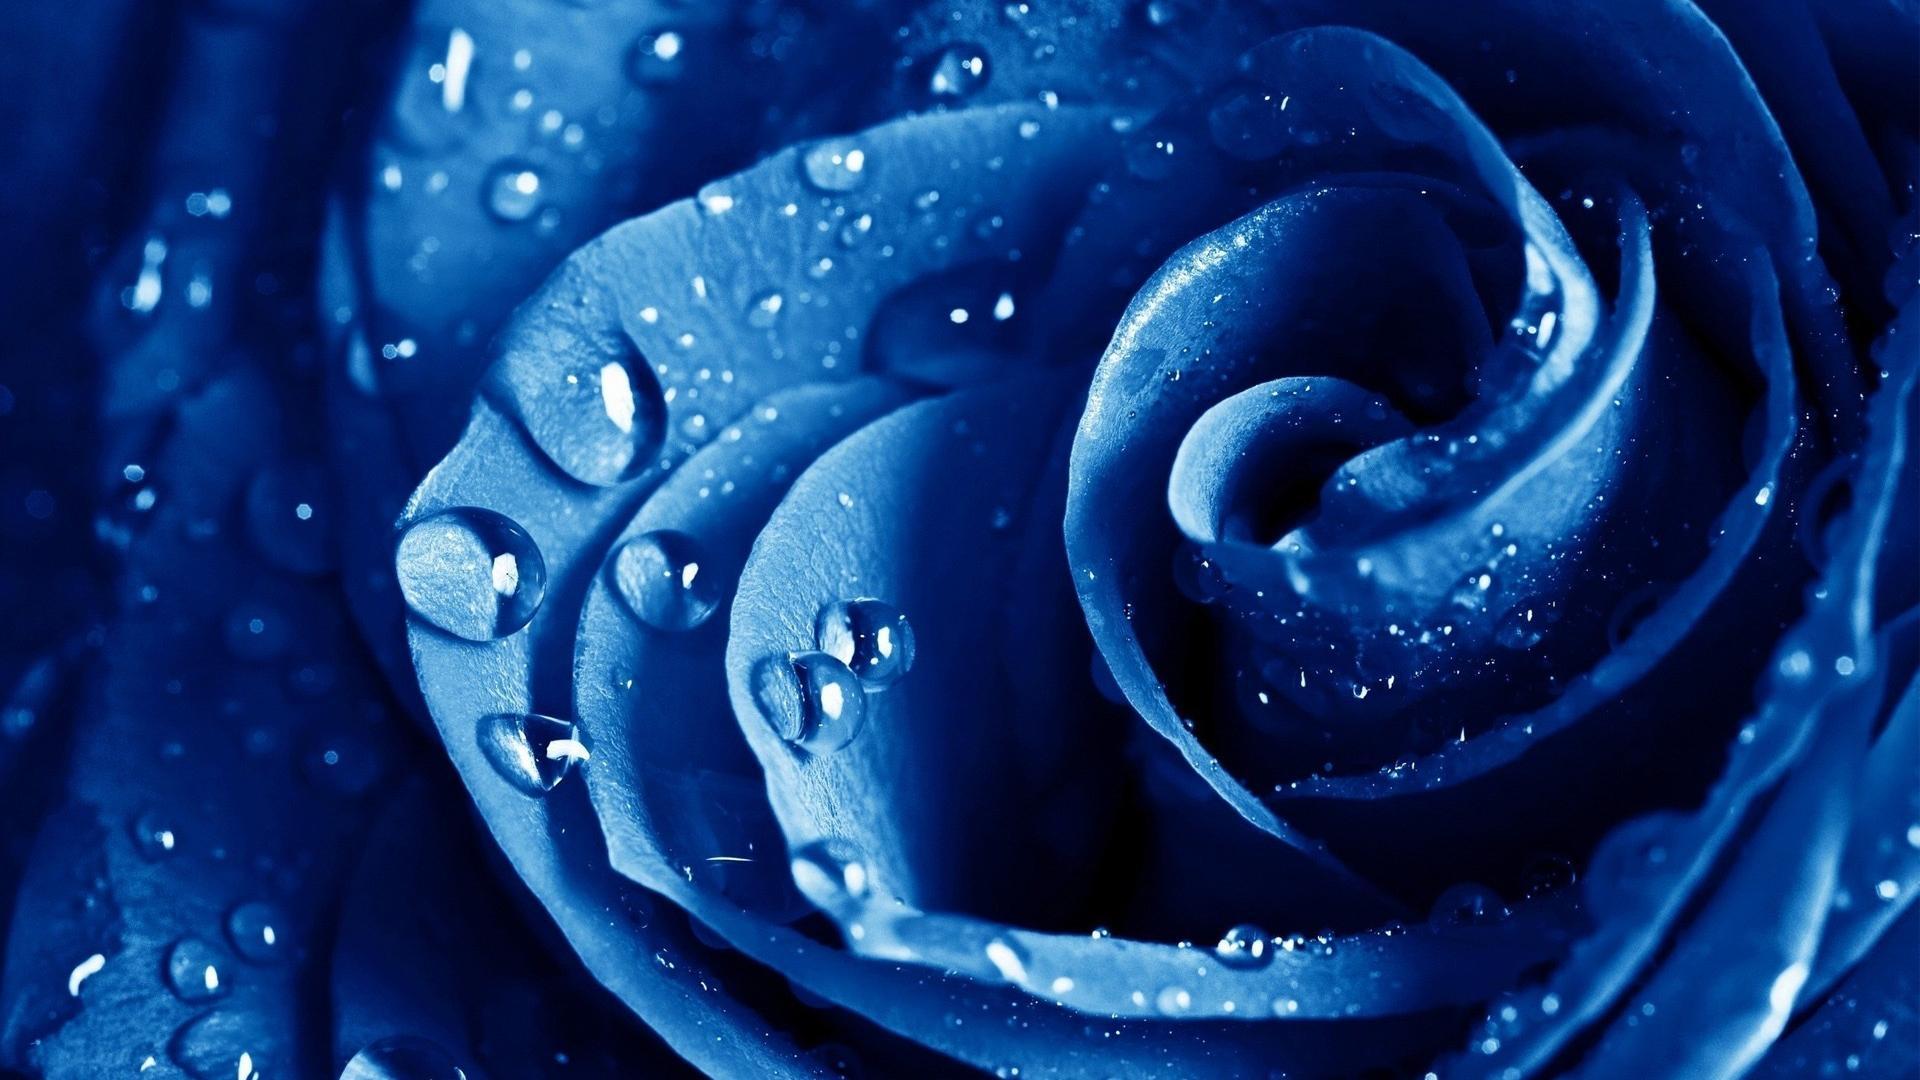 Water drops macro roses blue rose flowers wallpaper